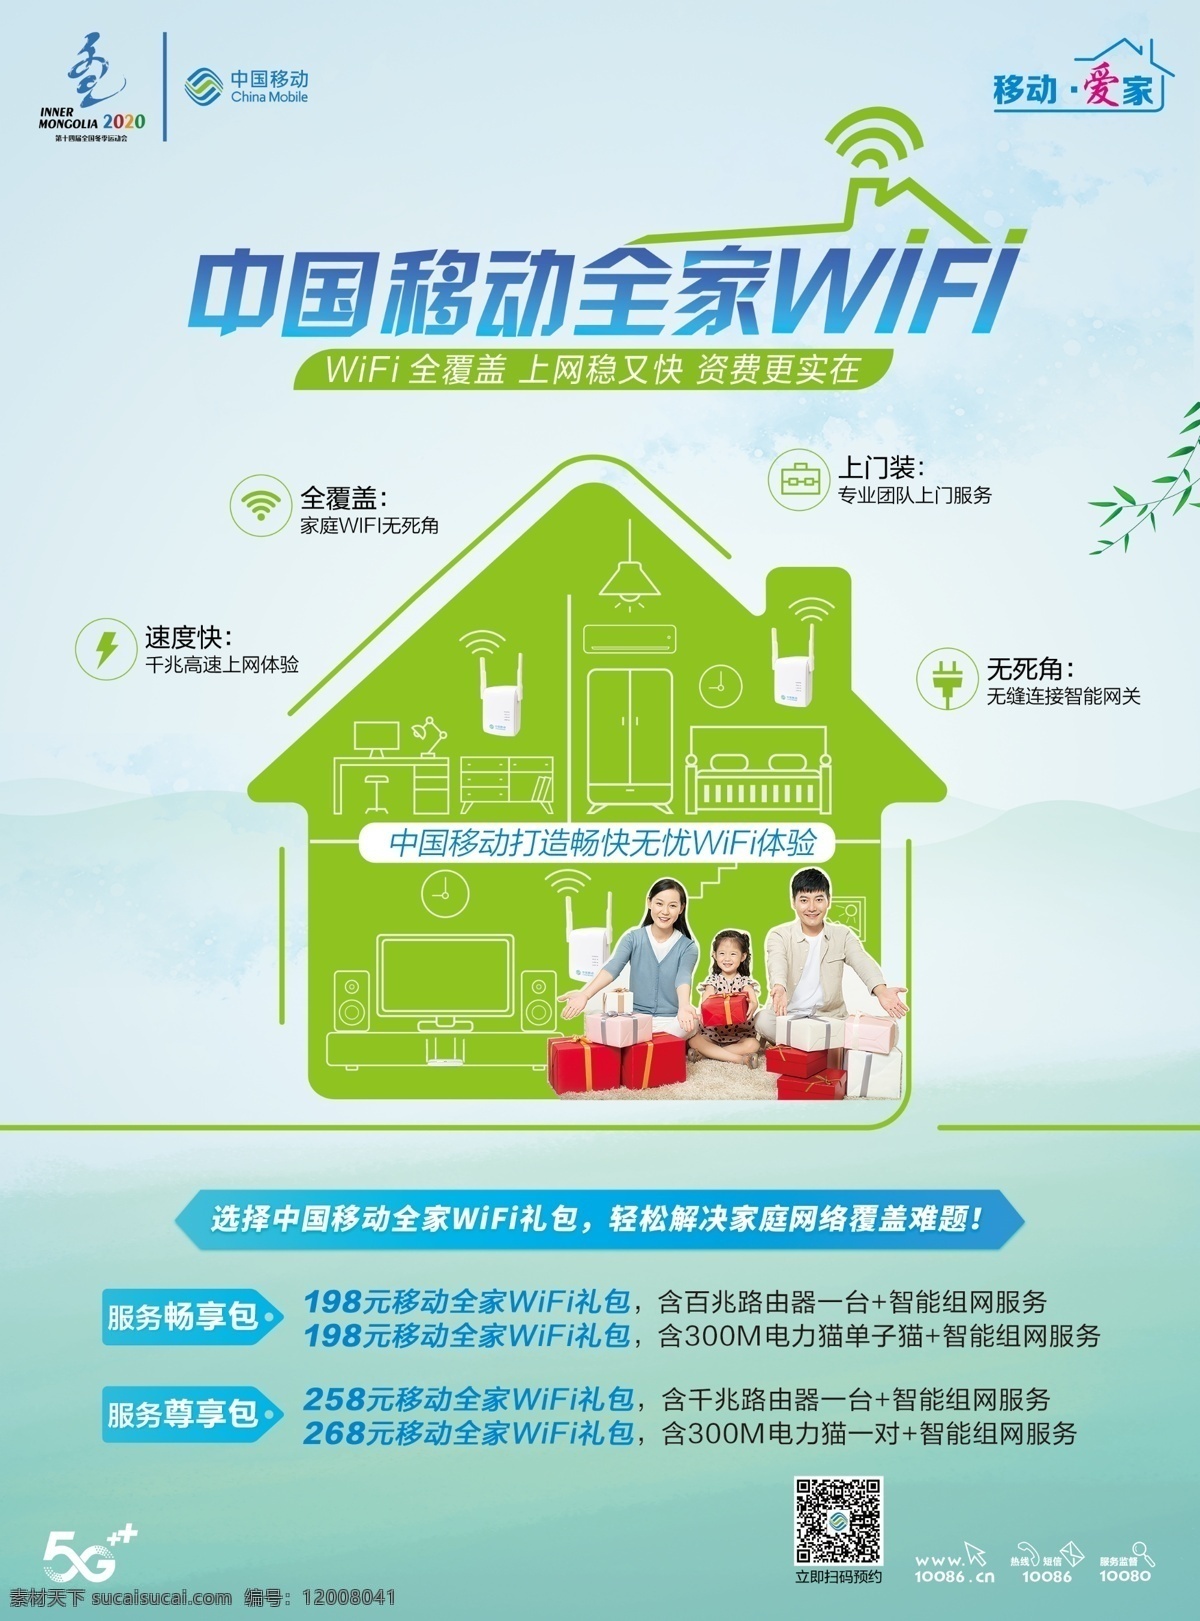 移动 全 屋 wifi 中国移动 全屋wifi 一家人 无线上网 移动标识